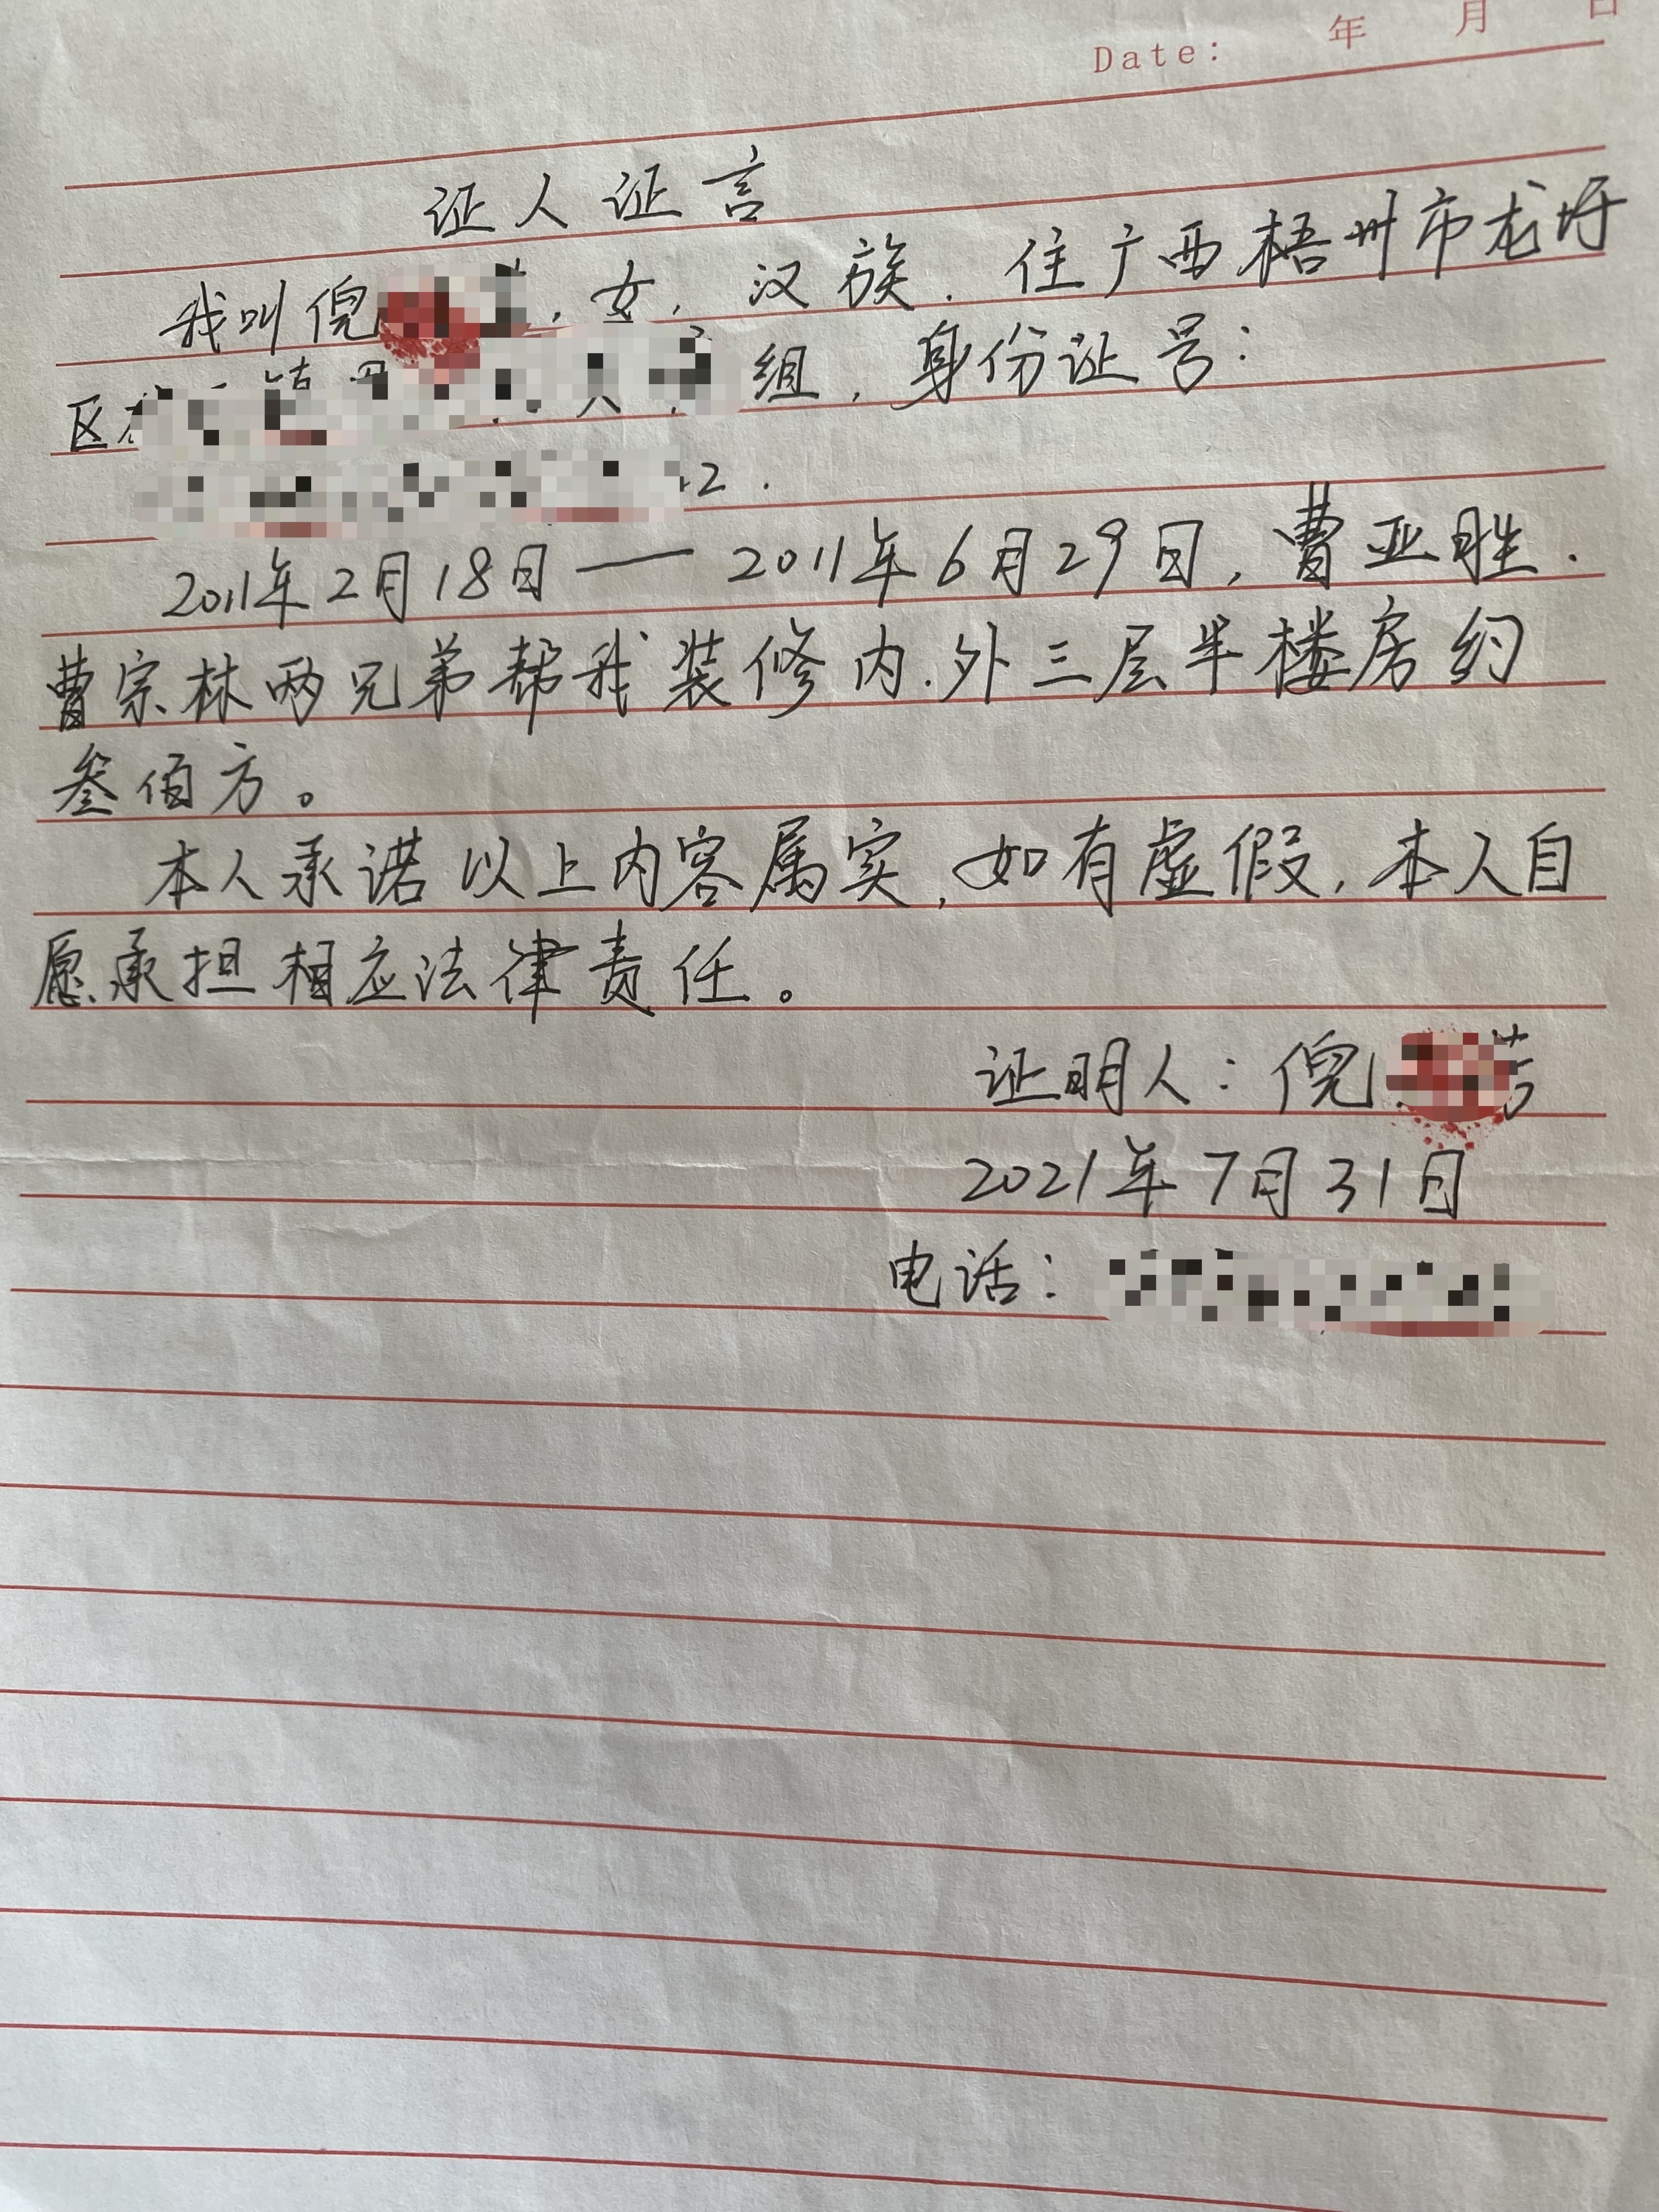 曹亚胜被抓后，堂哥曹荣找人出具证明称，曹亚胜2011年2月至6月在广西干活。